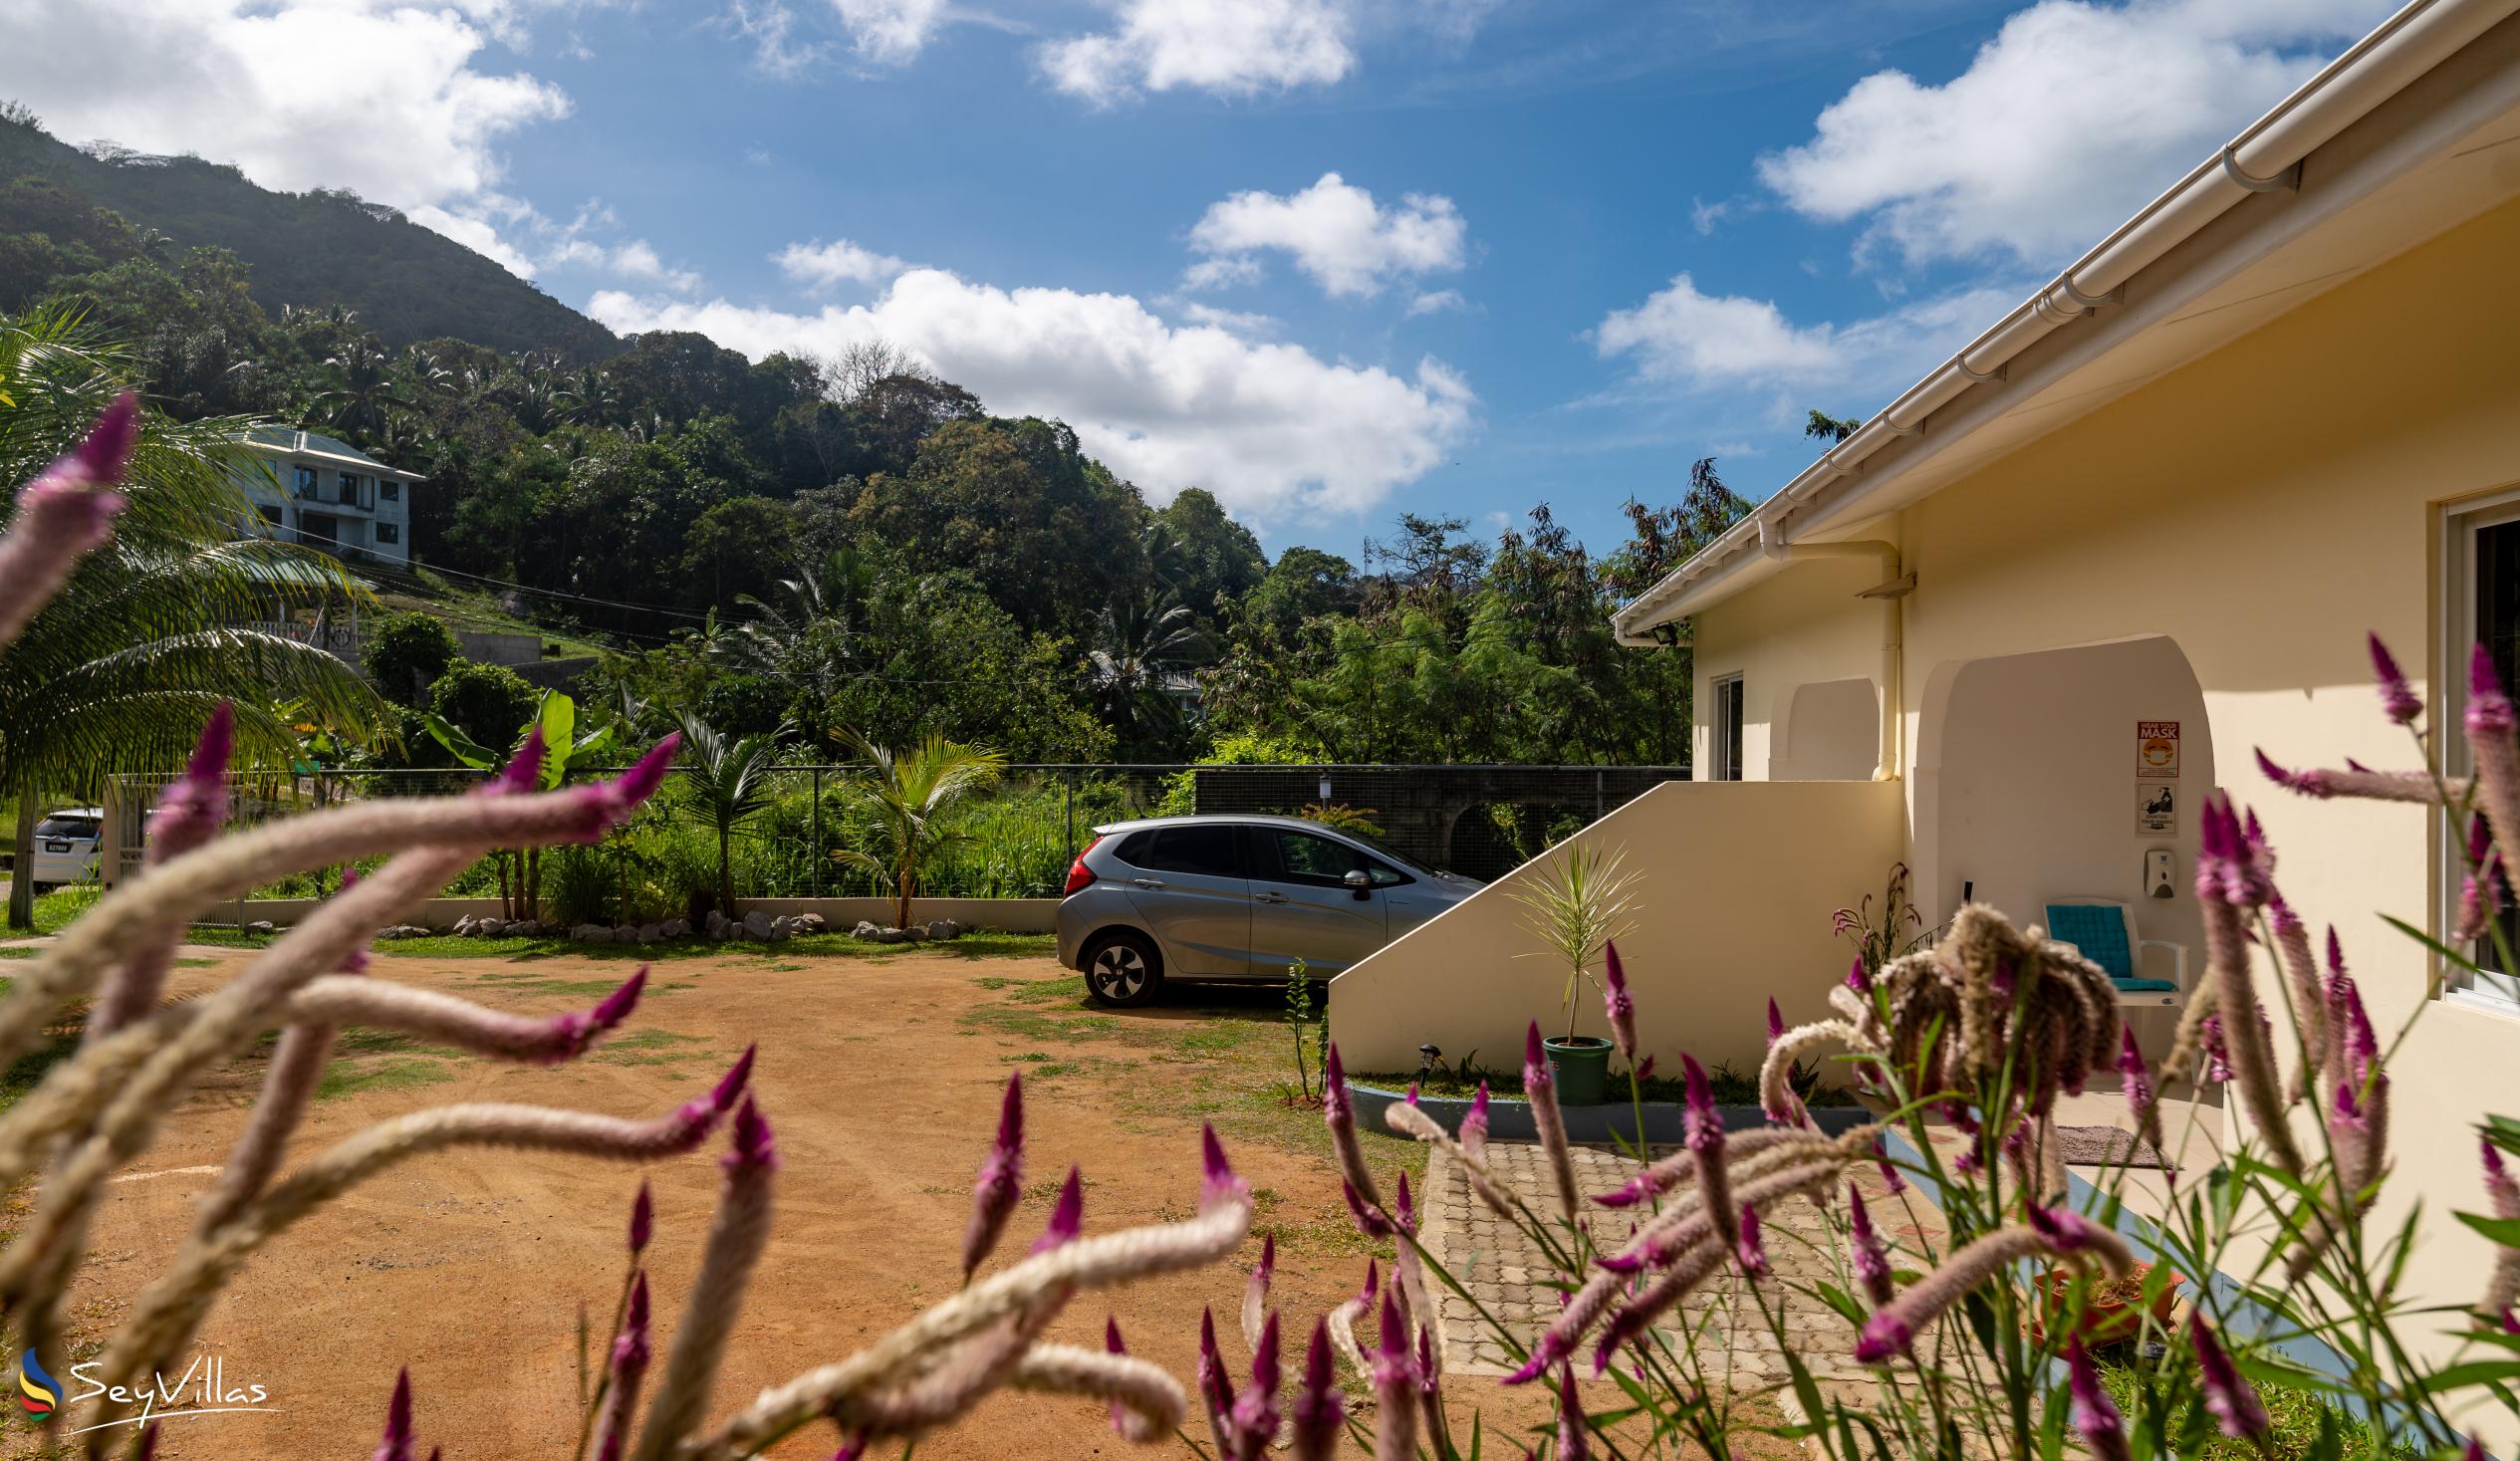 Photo 13: Farida Apartments - Outdoor area - Mahé (Seychelles)